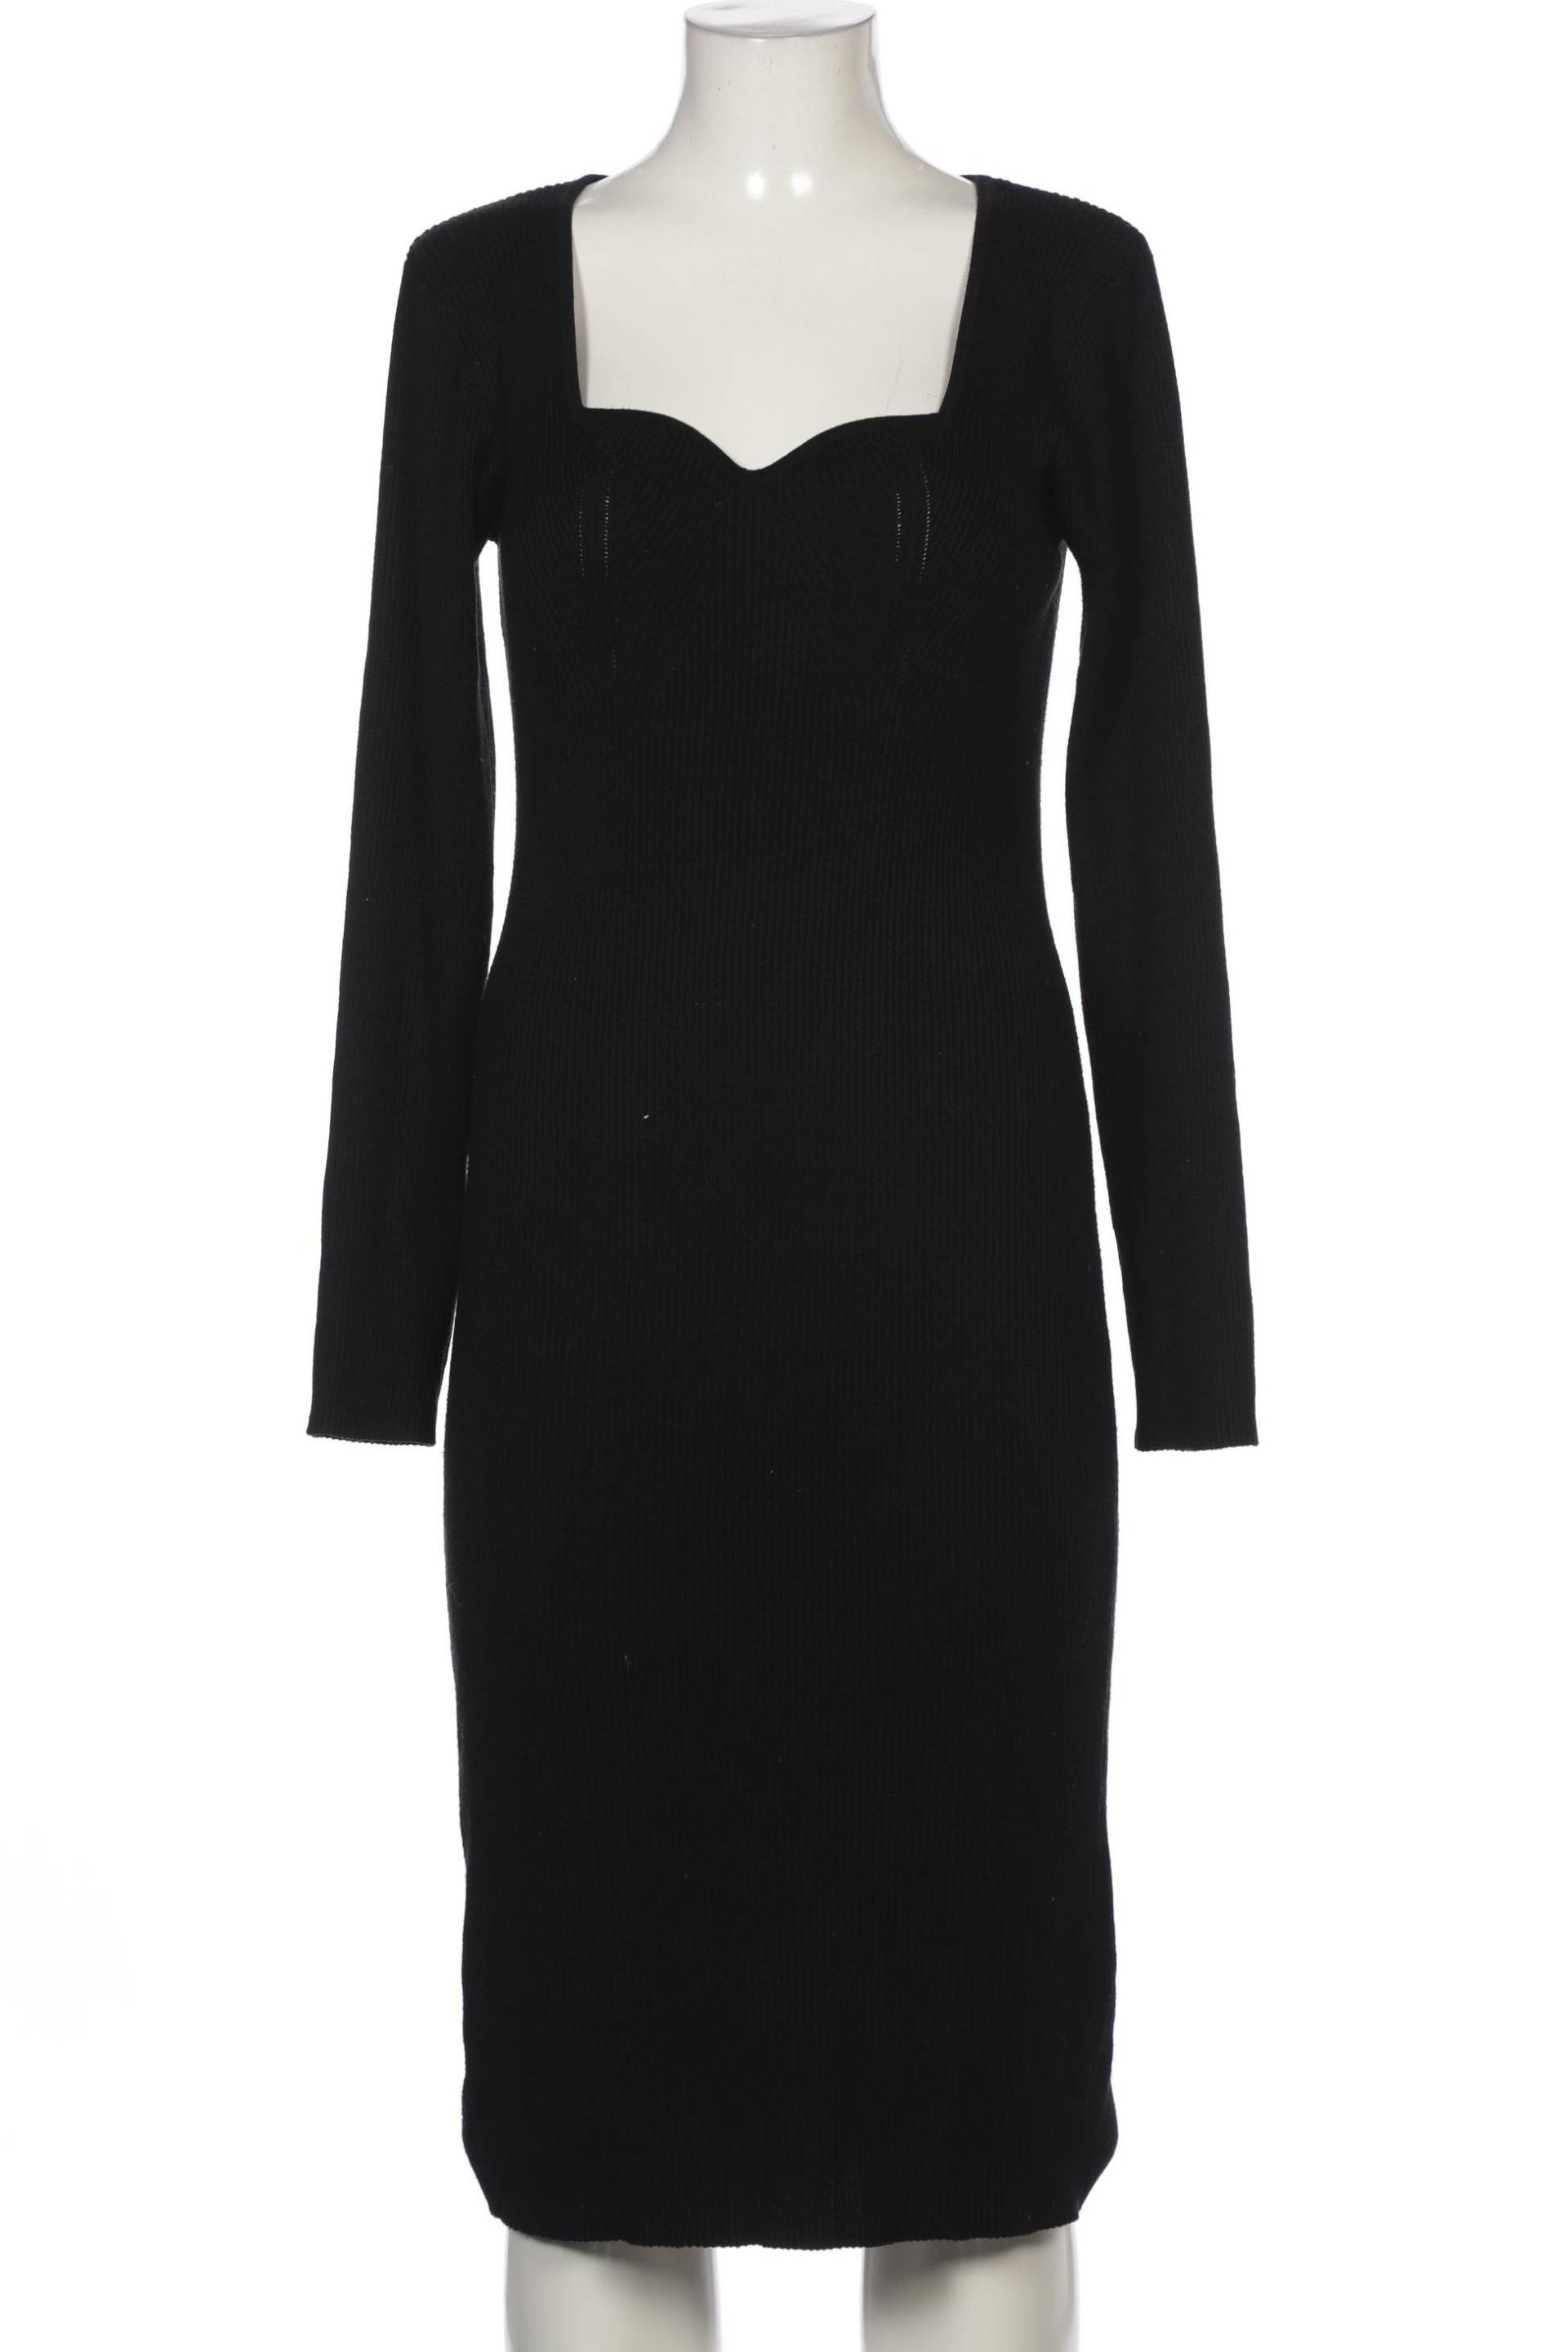 New Look Damen Kleid, schwarz, Gr. 40 von New Look